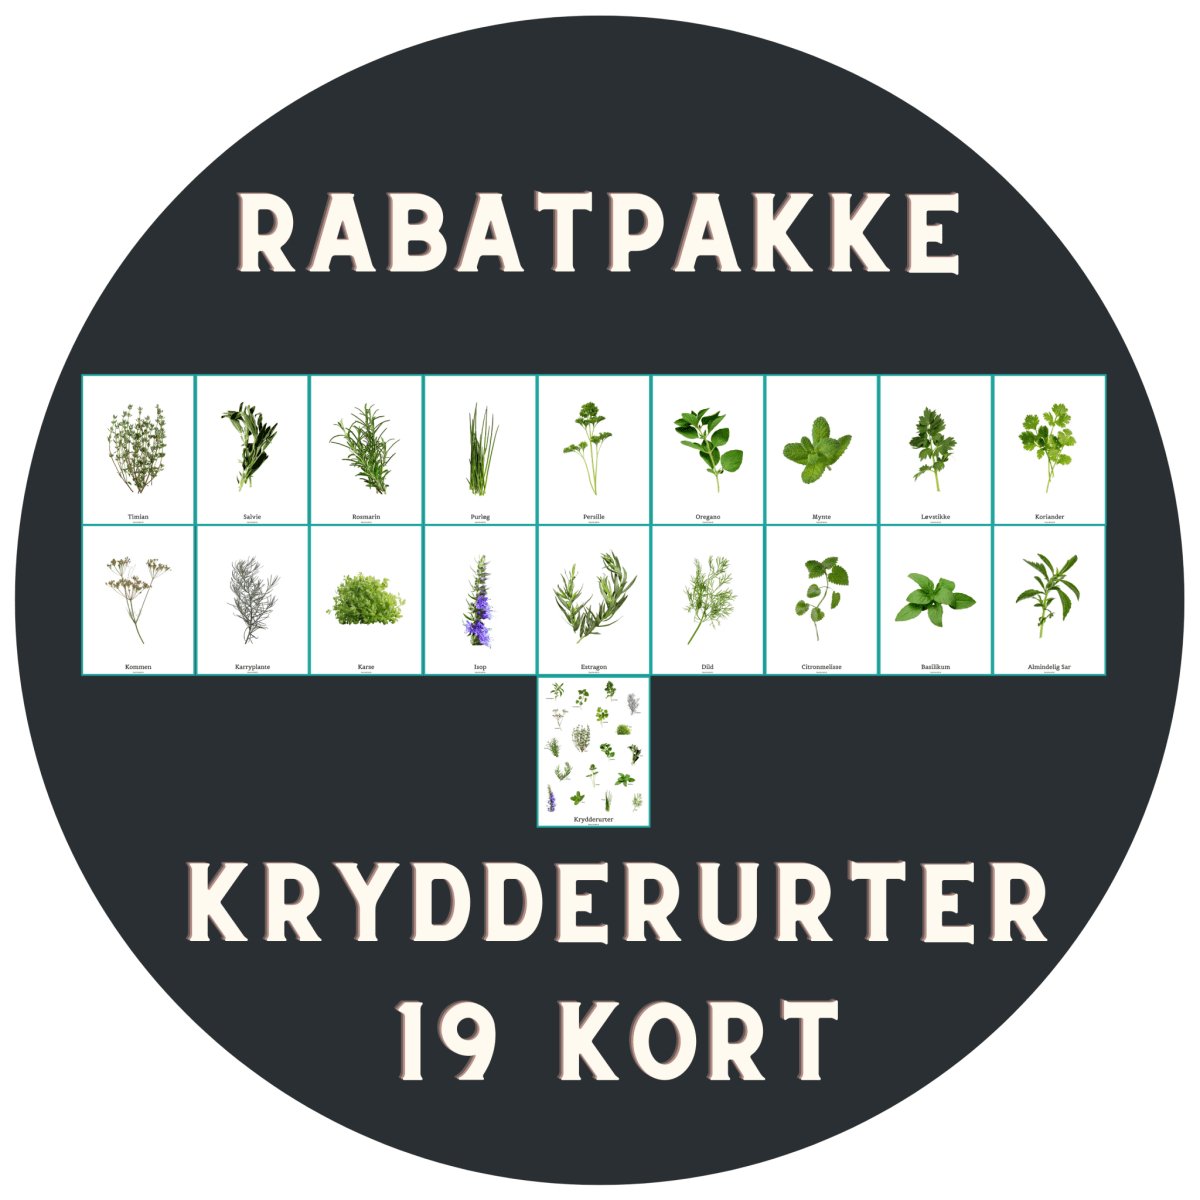 Krydderurter - 19 Kort m. kuvert - RABATPAKKE - Af NaturHandel.dk - NaturHandel.dk